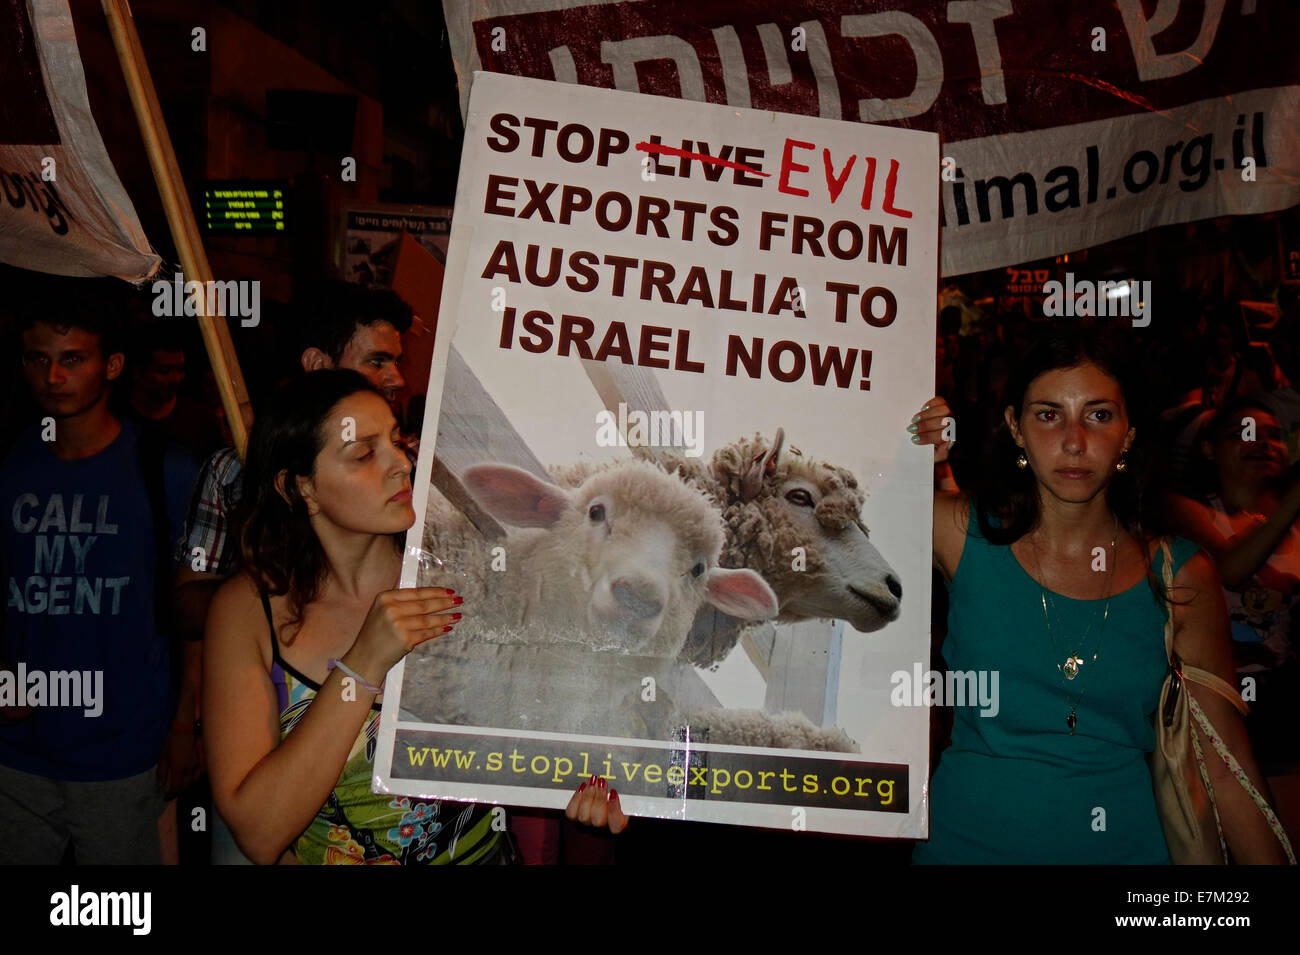 Un démonstrateur détient un écriteau intitulé « Stop Evil Exports from Australia to Israel » lors d'une manifestation pour les droits des animaux à tel Aviv Israël le 20 septembre 2014. Des manifestants montrent des signes qui dénonce les transports de bétail en Israël pour abattage et expérimentation sur les animaux. Banque D'Images